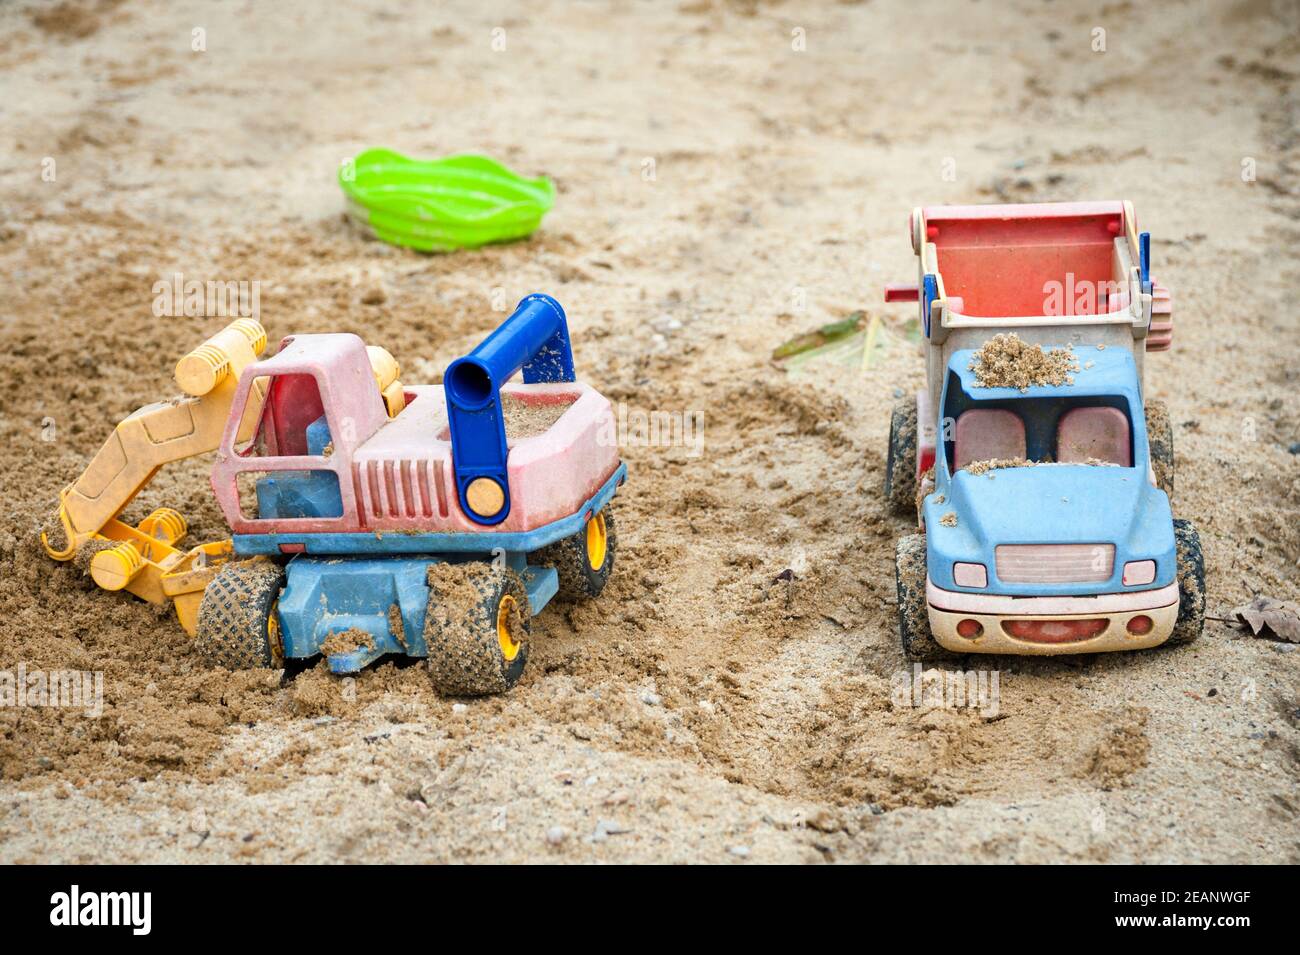 Jouet et camion de bulldozer au terrain de jeu sablonneux Photo Stock -  Alamy